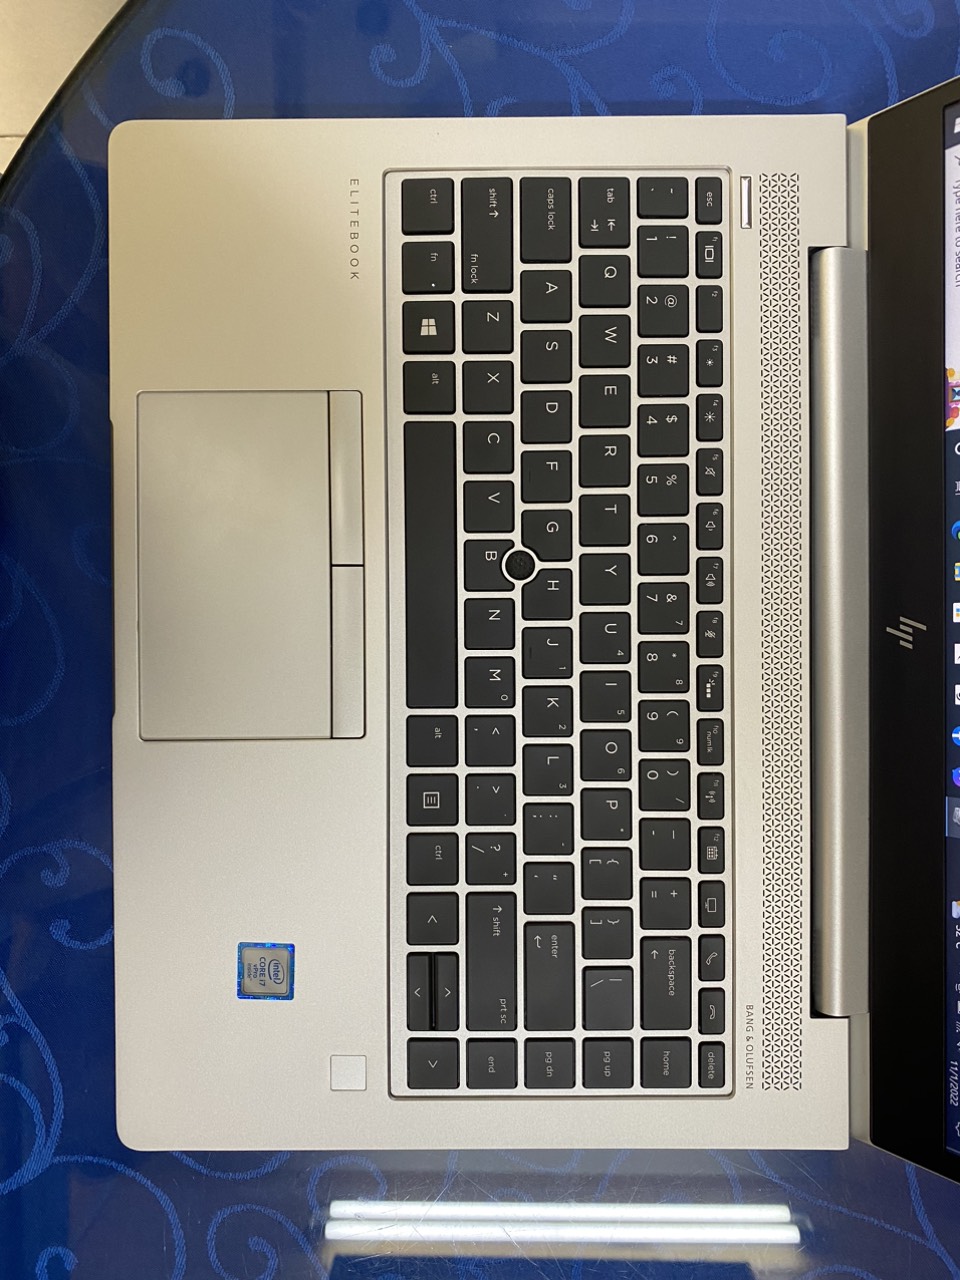 HP EliteBook 840 G5 I7 8665U 8GB 256GB 14"FHD